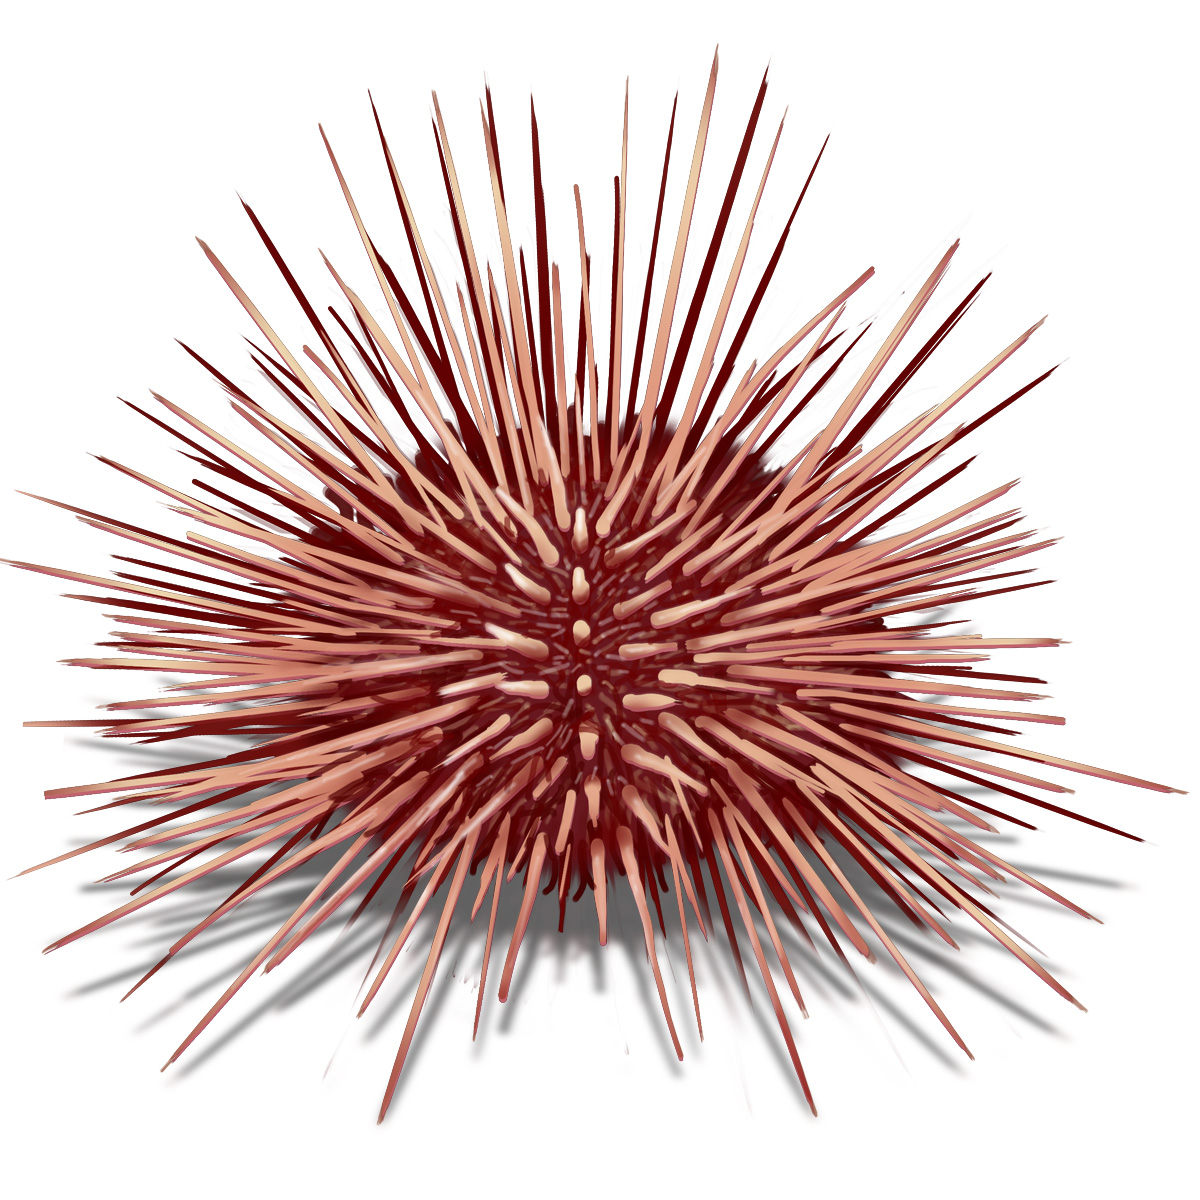 Sea Urchin by clipartcotttage